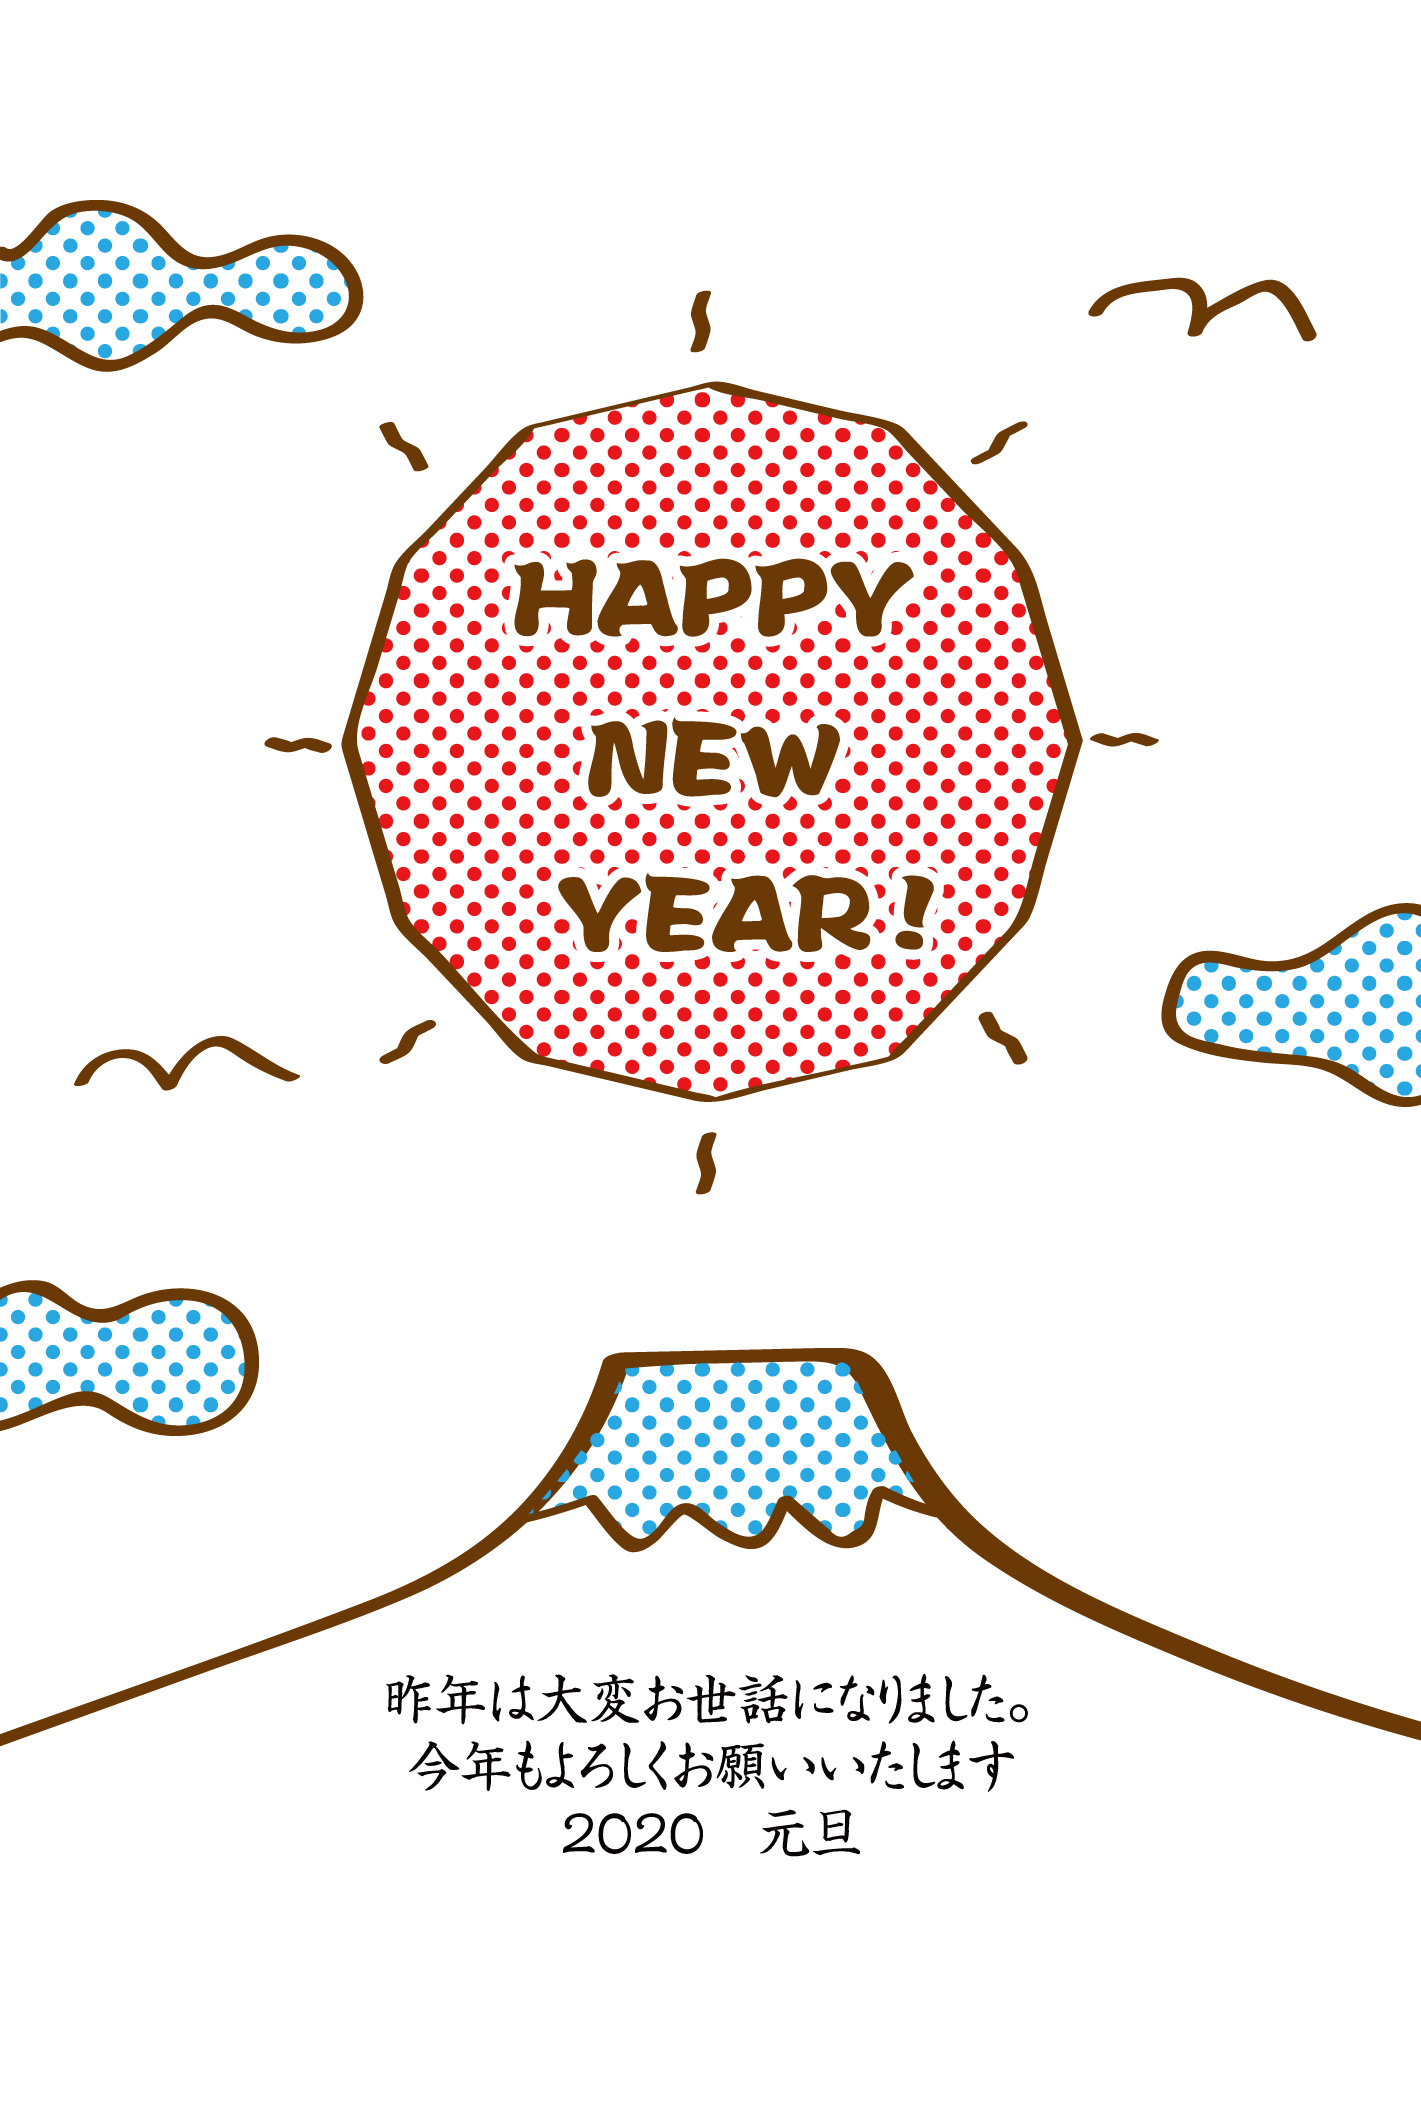 Happy New Year 富士山と初日の出のゆるかわ年賀状イラスト素材です 企業 ブランド等のロゴをillustrator Ai Eps形式 でトレース 無料ダウンロード